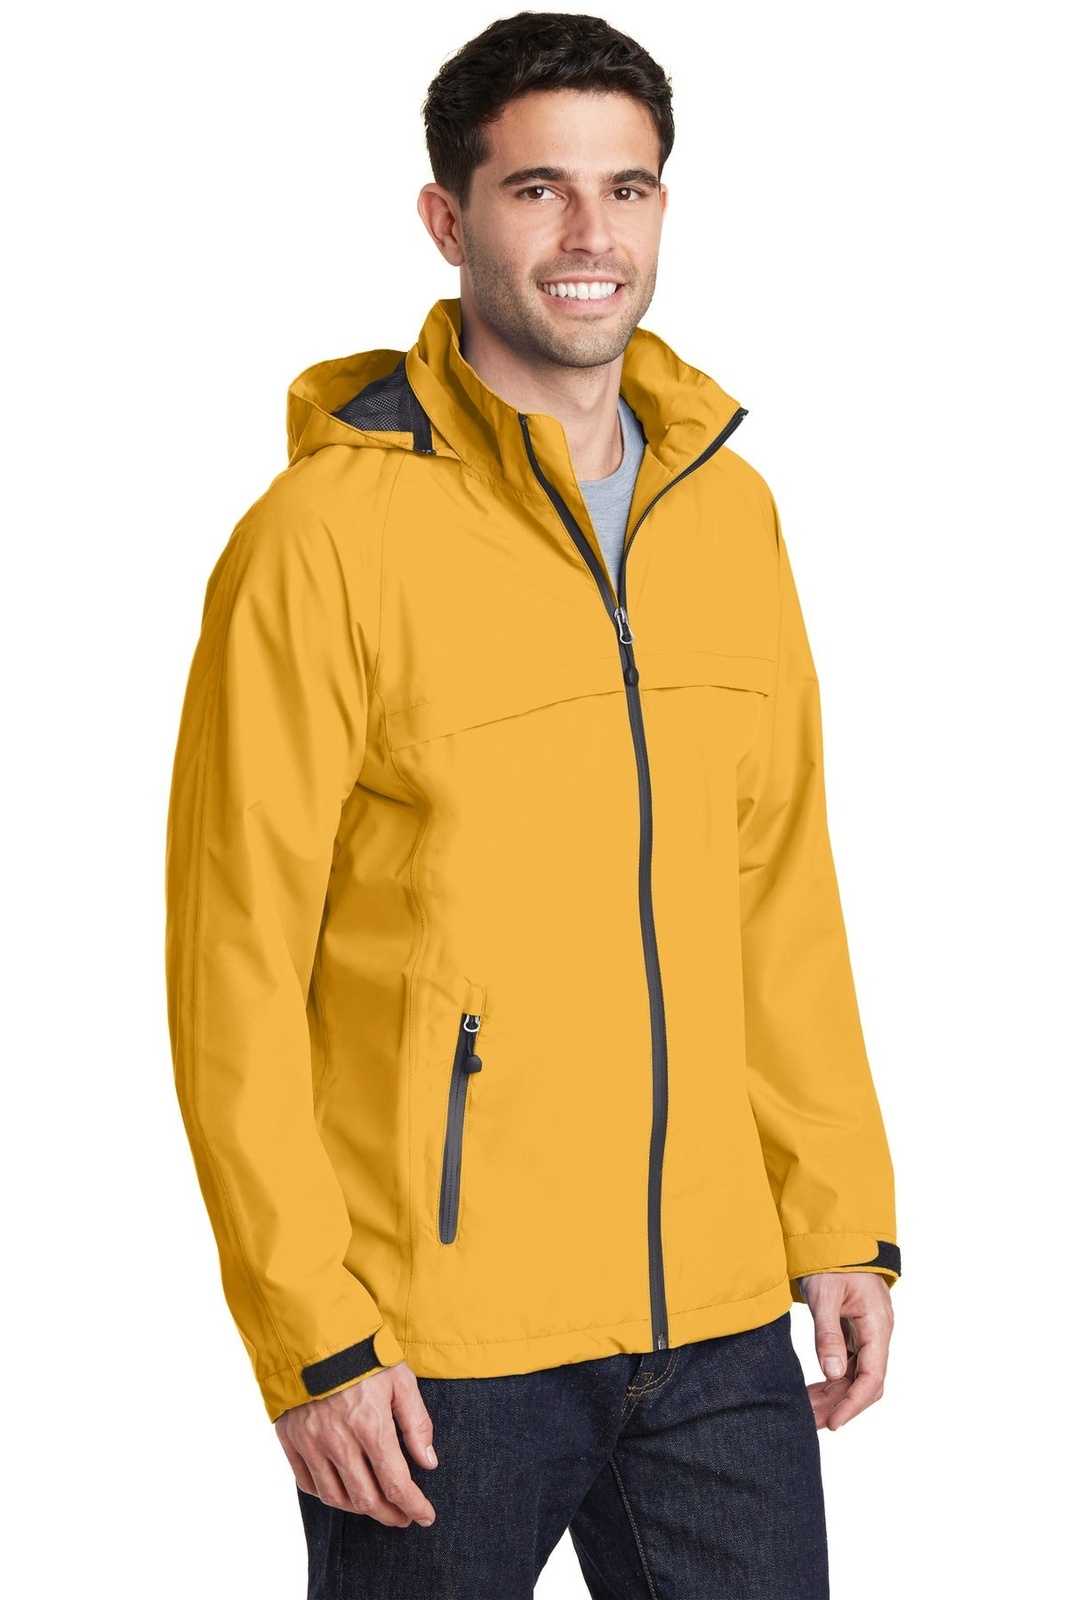 Port Authority J333 Torrent Waterproof Jacket - Slicker Yellow - HIT a Double - 4